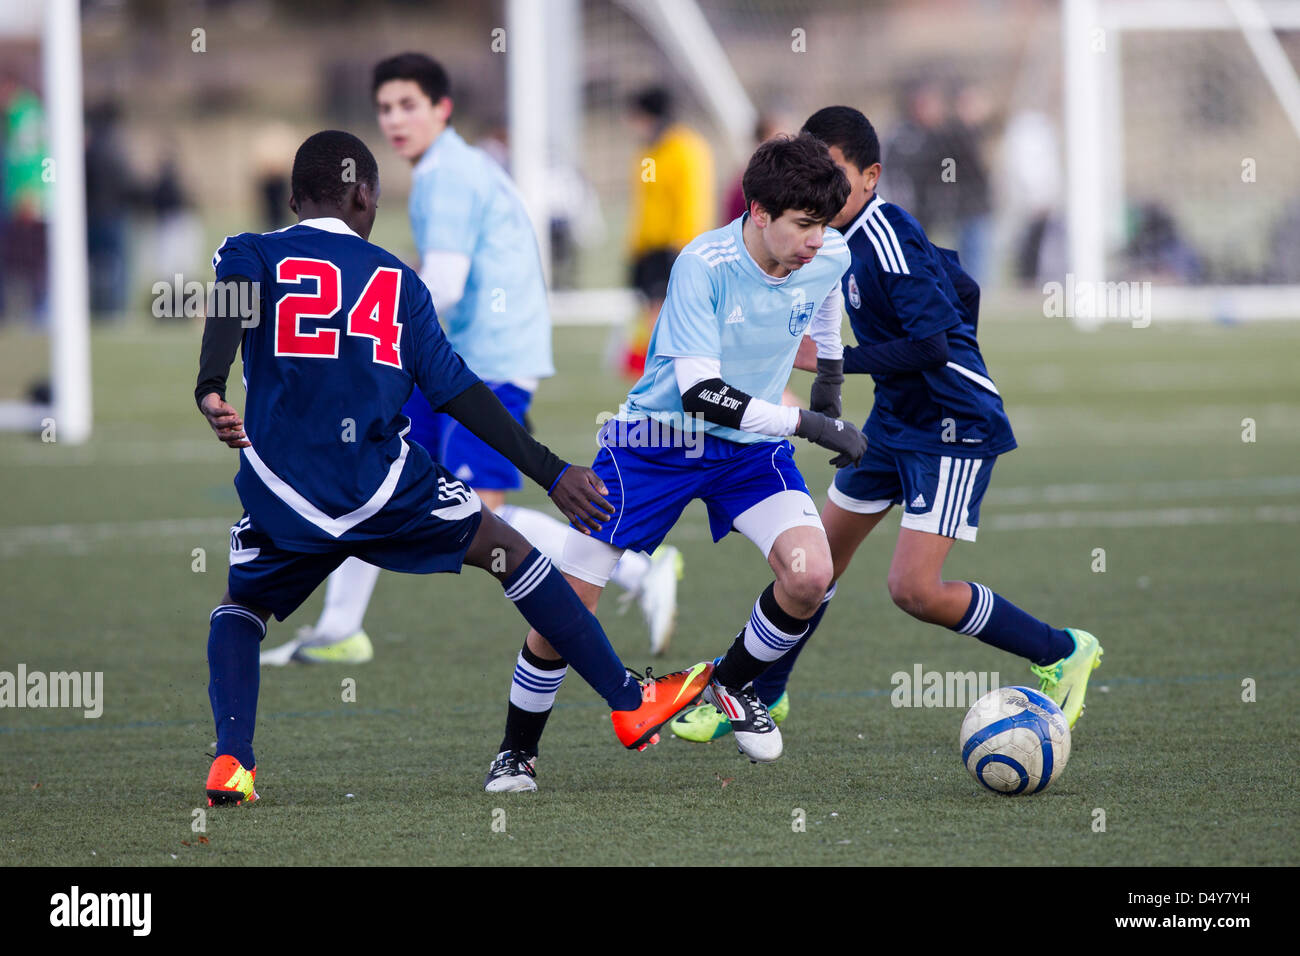 Los chicos adolescentes acción de fútbol. Foto de stock